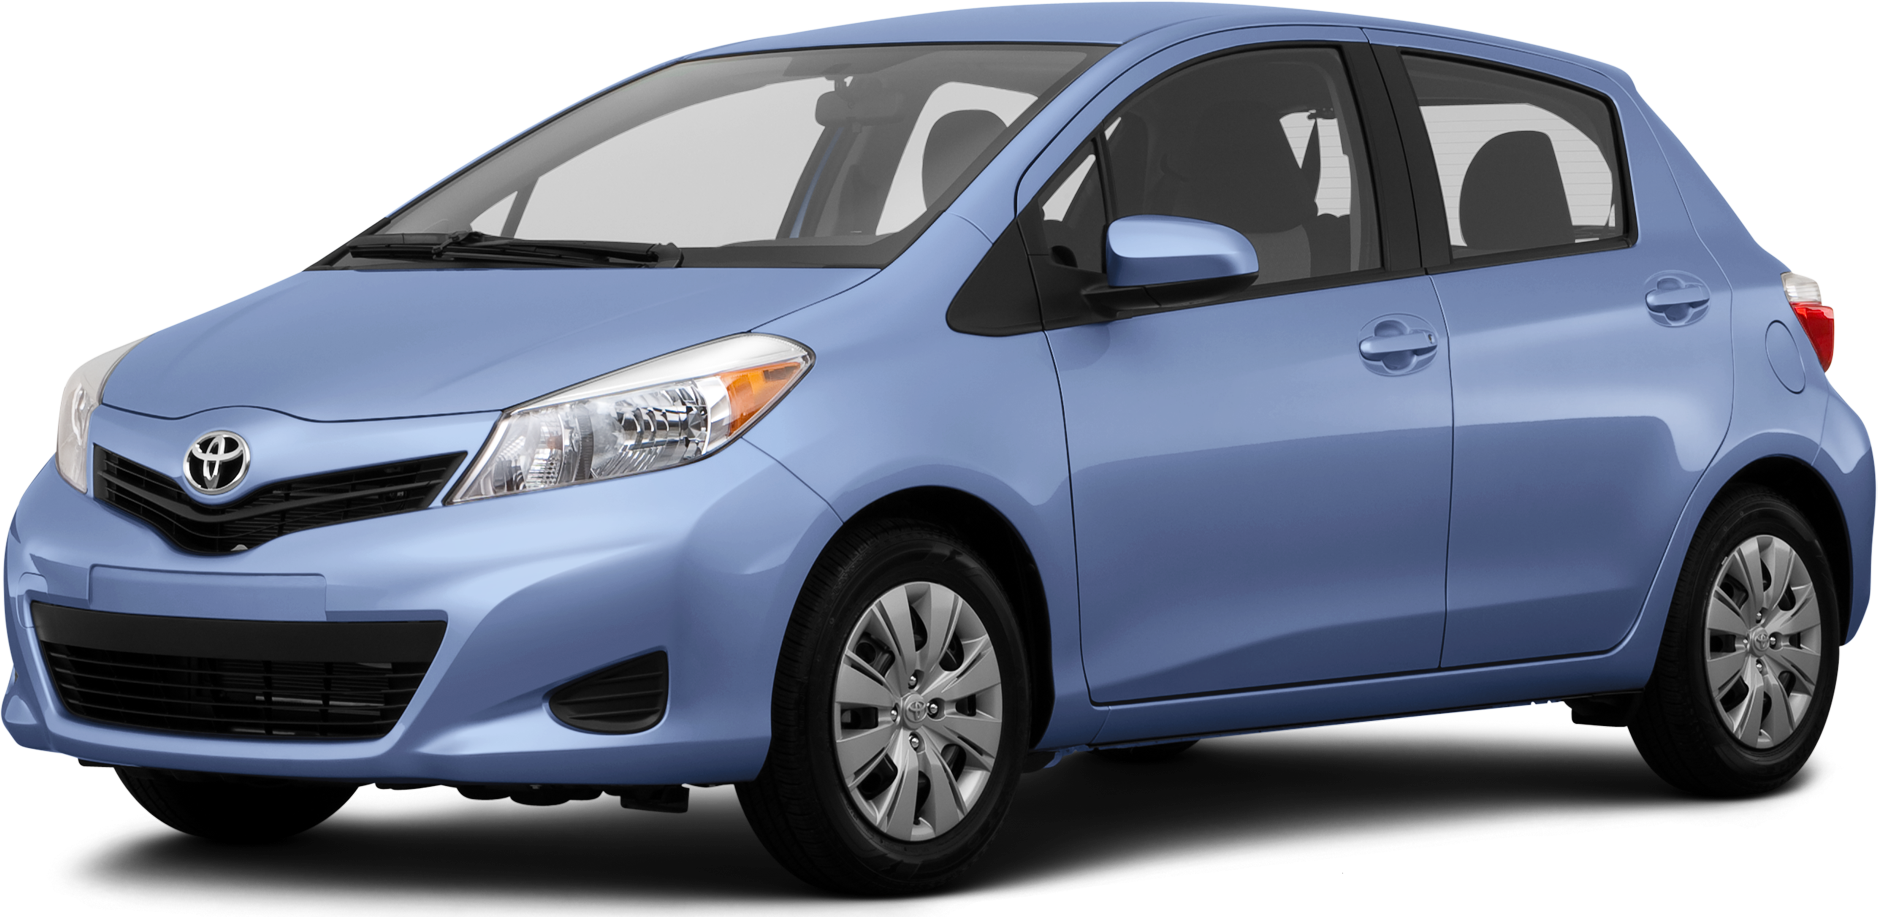 Toyota Yaris 2014 chính hãng giá từ 620 triệu đồng  Ôtô